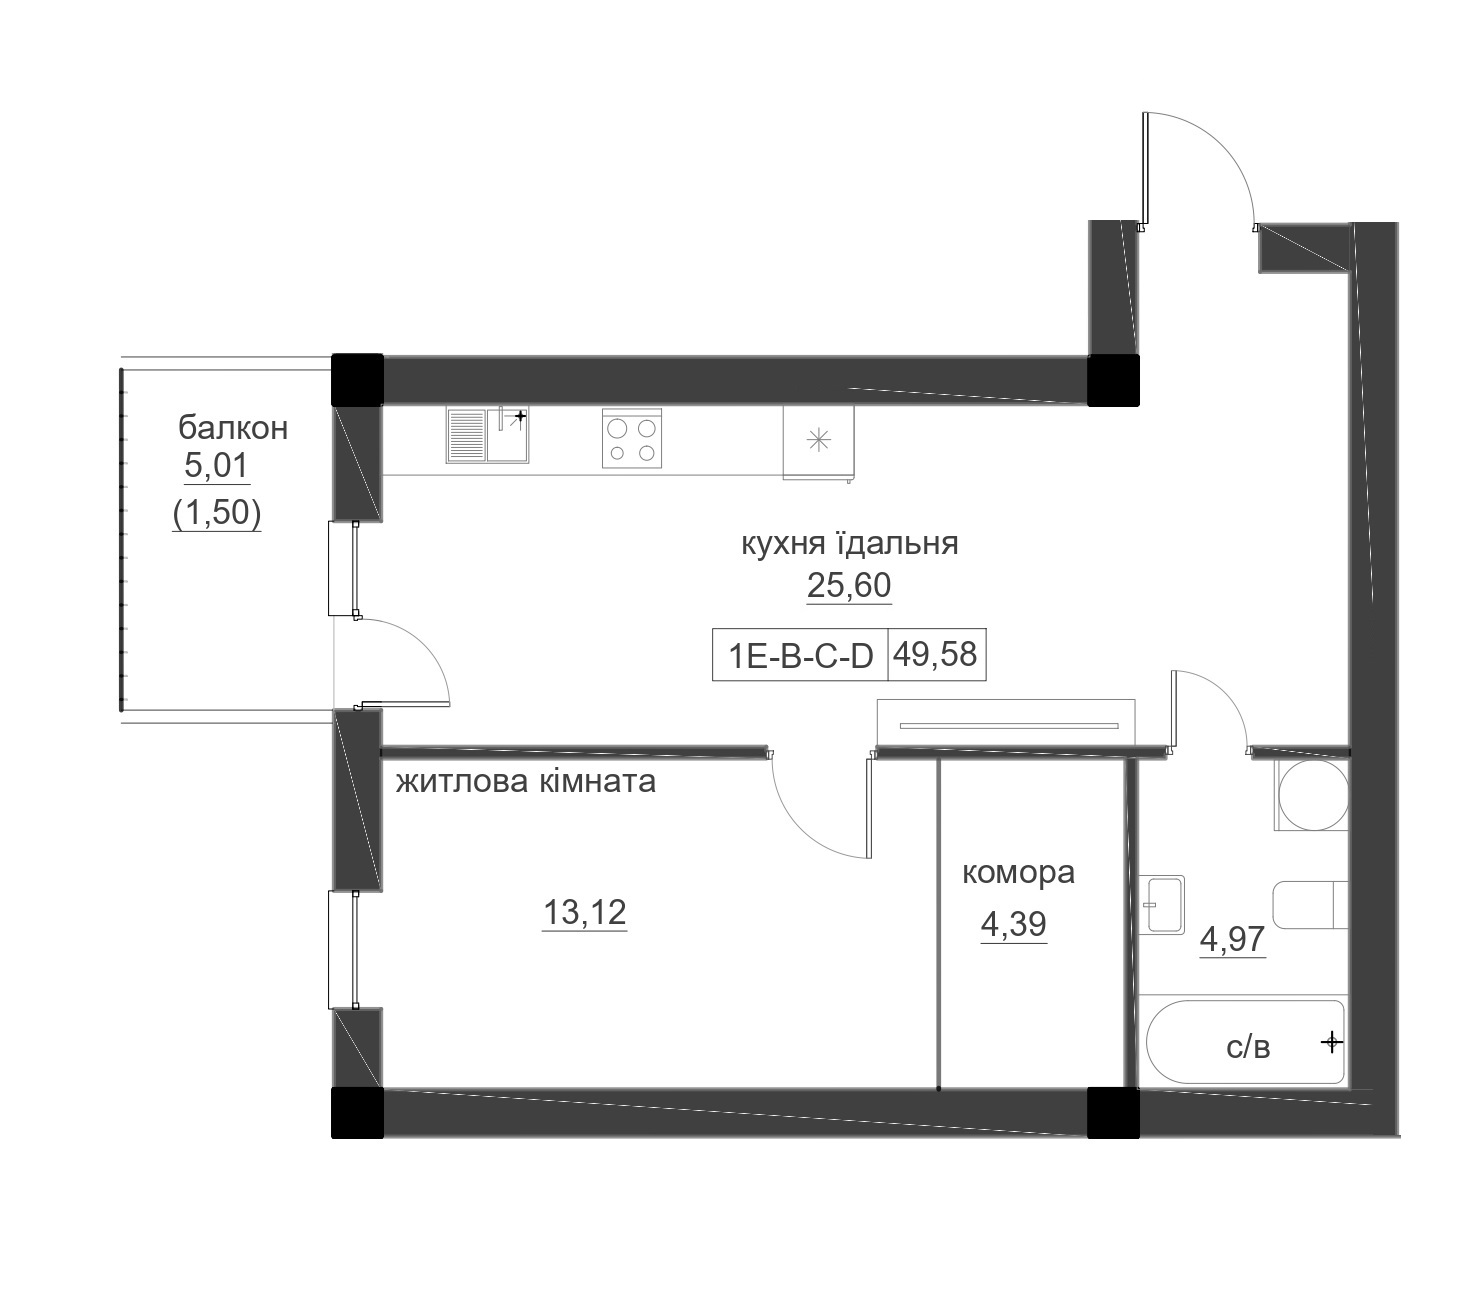 Планировка 1-к квартира площей 49.58м2, LR-005-04/0005.